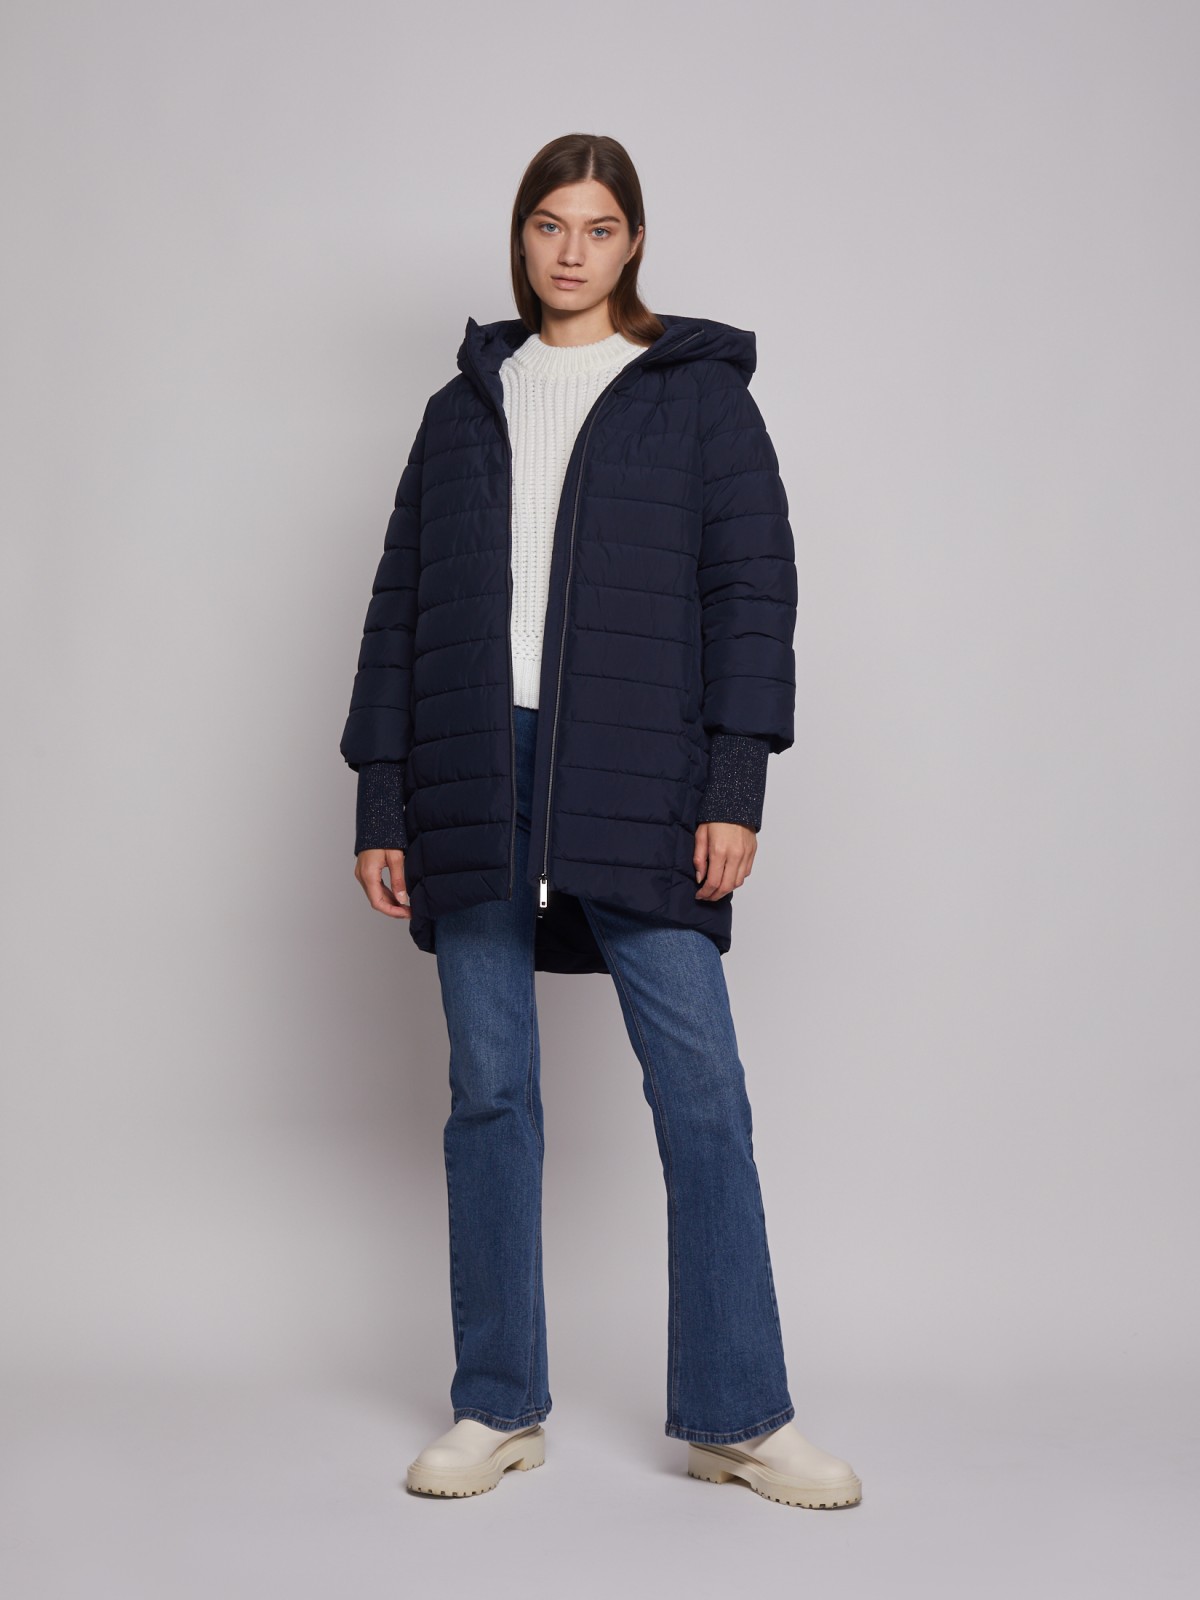 Утеплённое пальто объёмного силуэта zolla 022335202084, цвет синий, размер S - фото 2